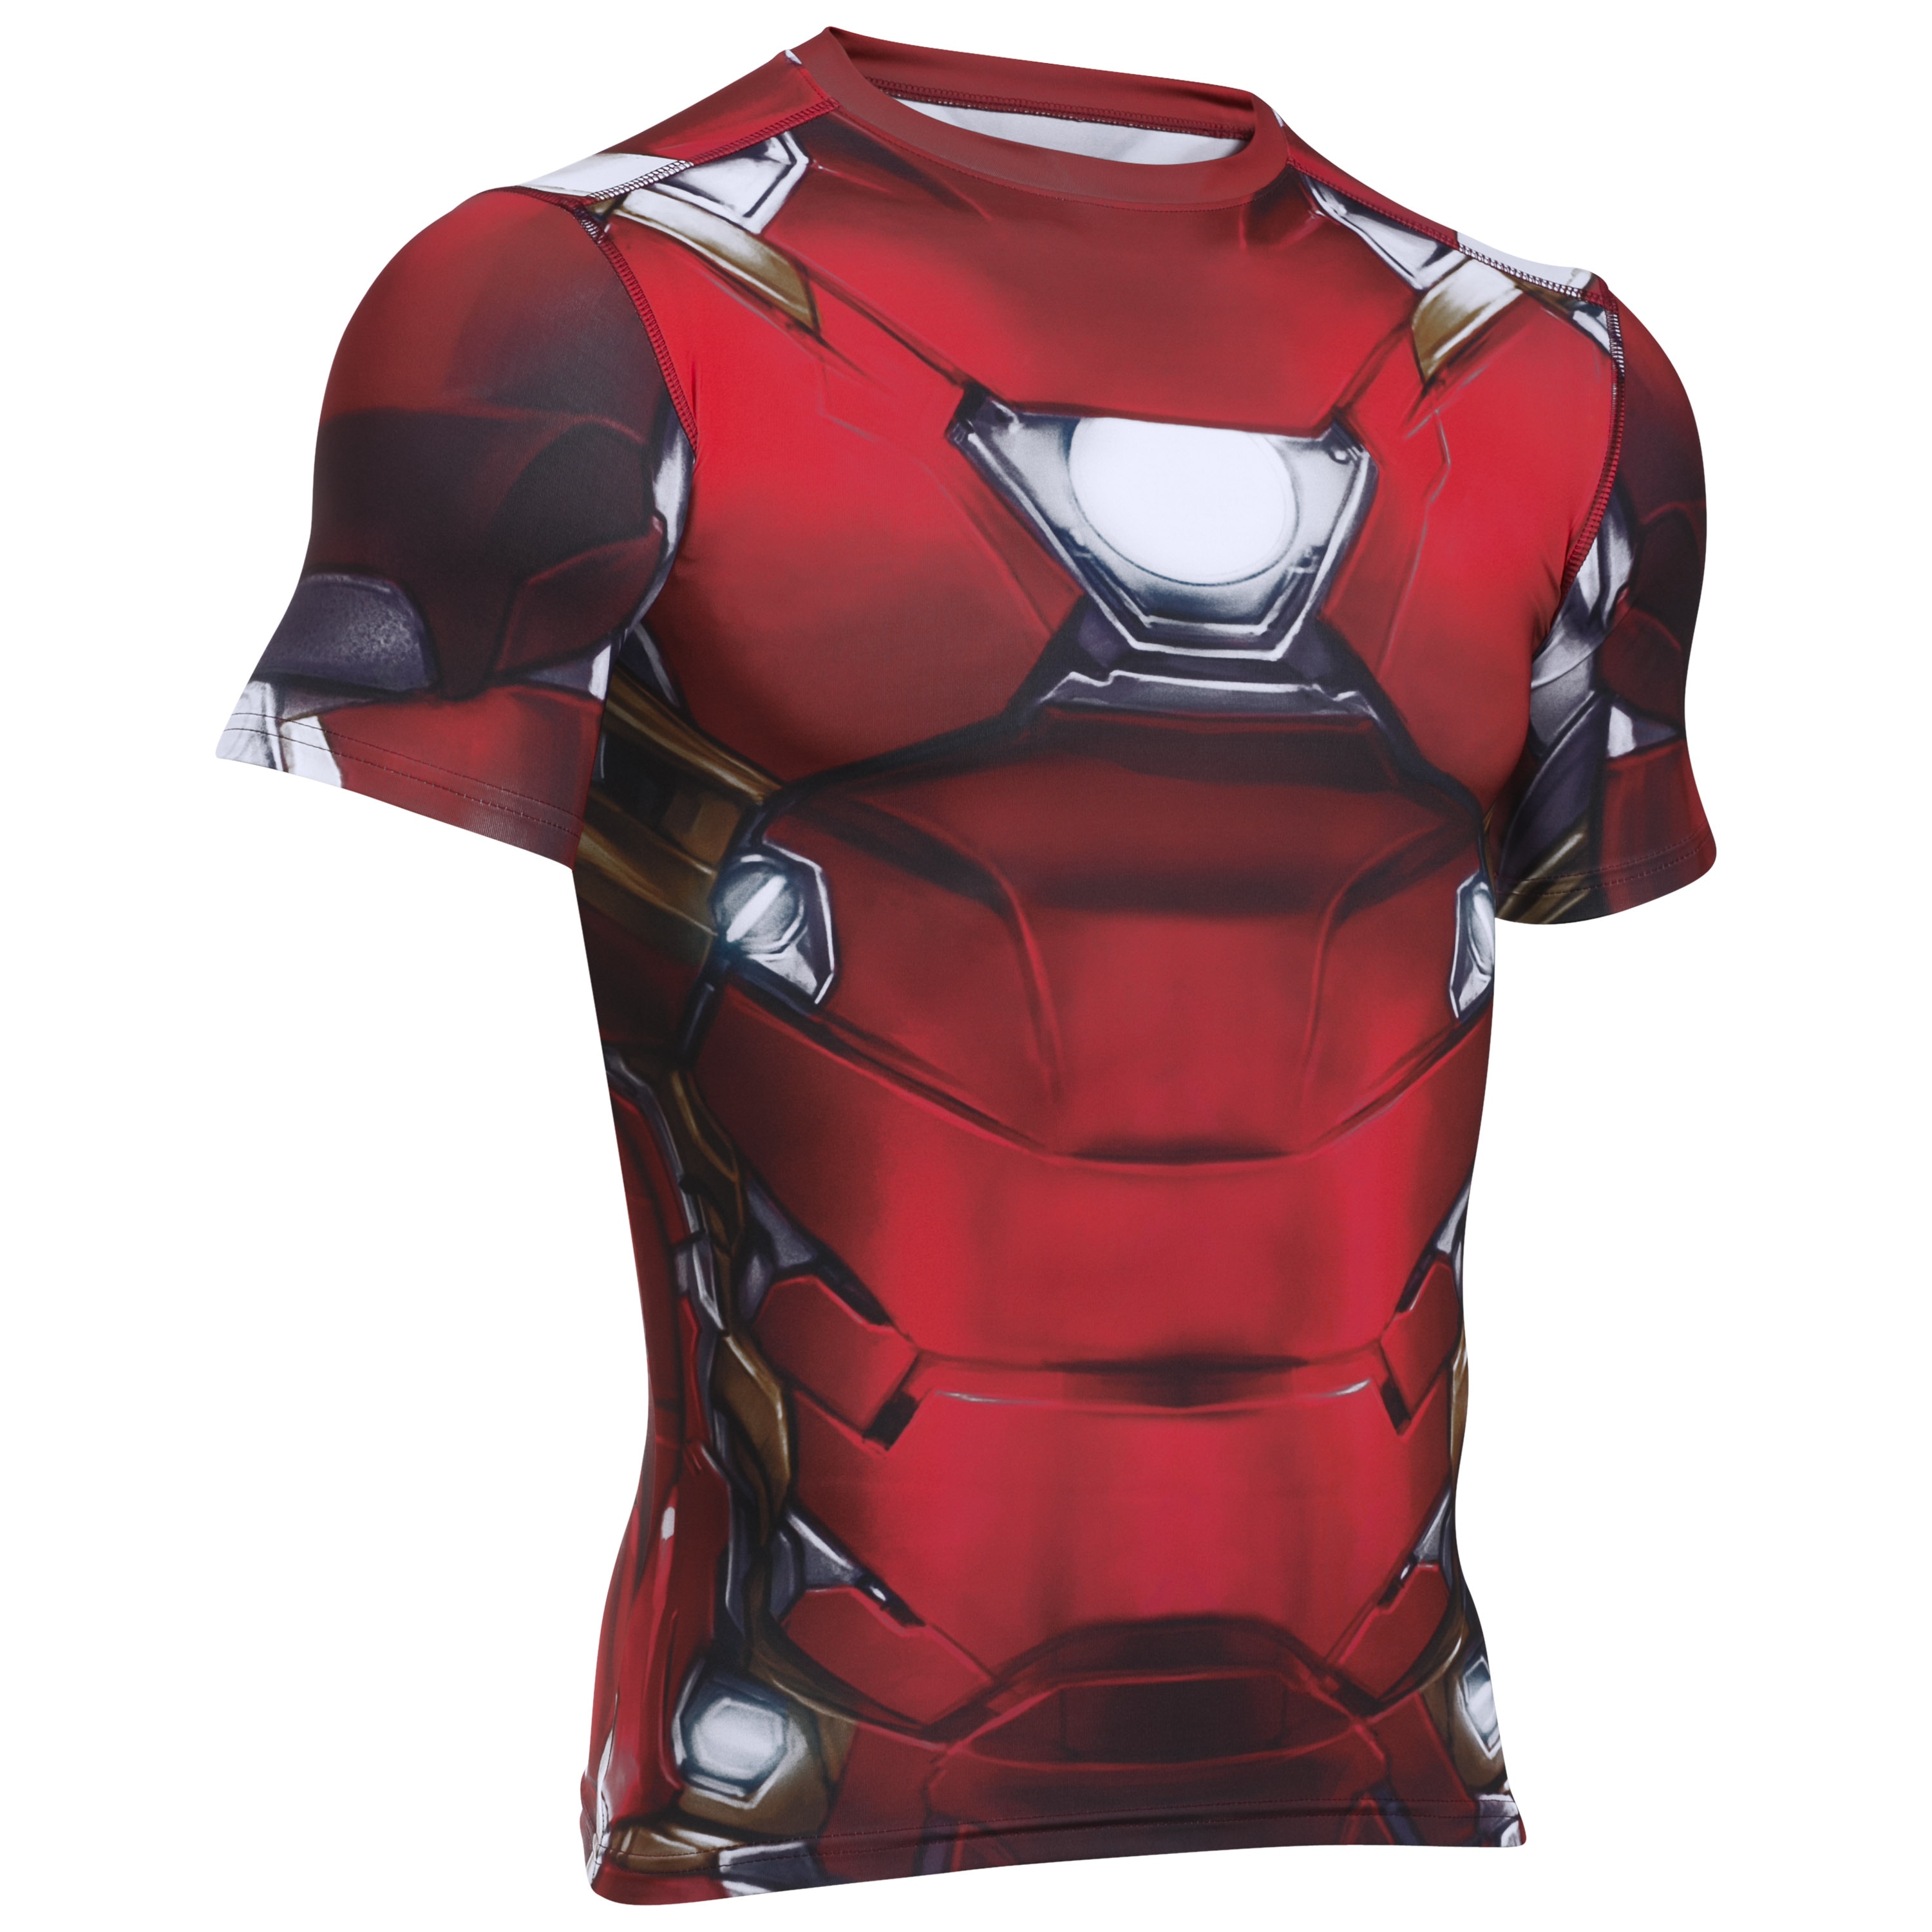 pánico Decorativo parcialidad Under Armour Shirt Iron Man Suit